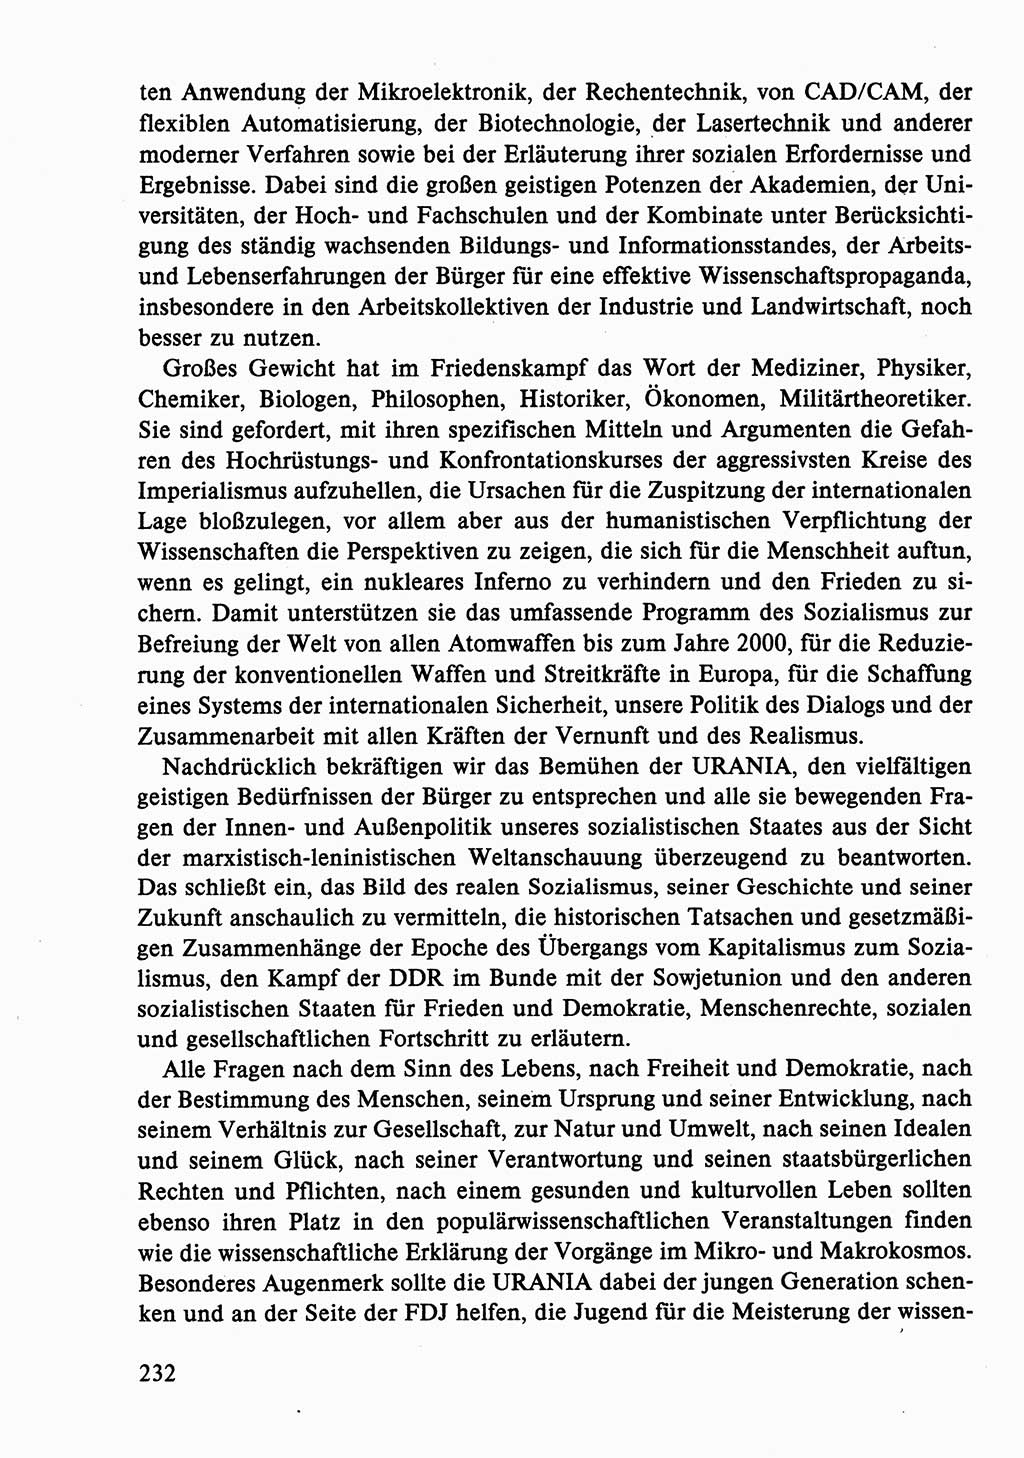 Dokumente der Sozialistischen Einheitspartei Deutschlands (SED) [Deutsche Demokratische Republik (DDR)] 1986-1987, Seite 232 (Dok. SED DDR 1986-1987, S. 232)